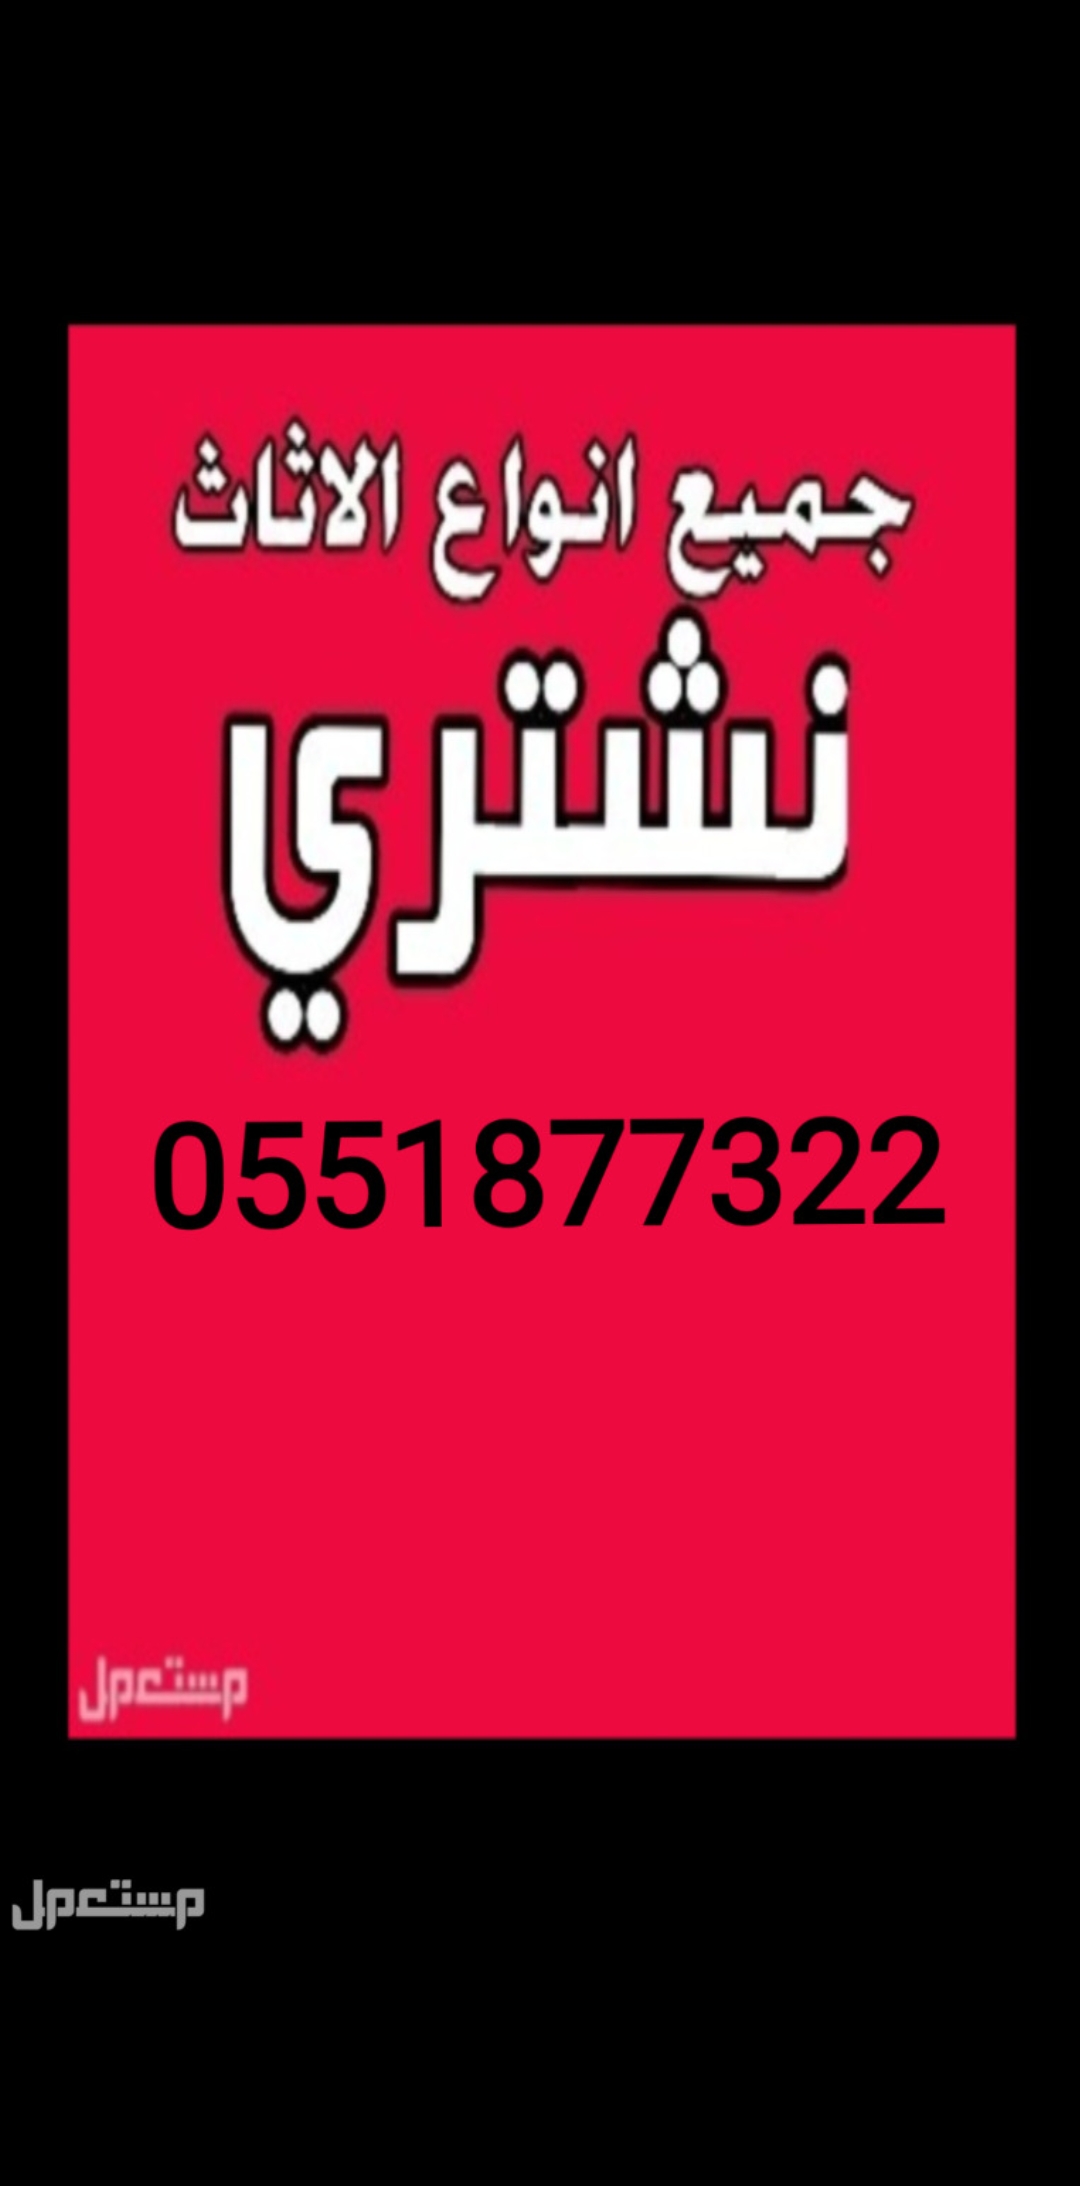 شراء الاثاث المستعمل شمال الرياض 0551877322،،،،0551877322